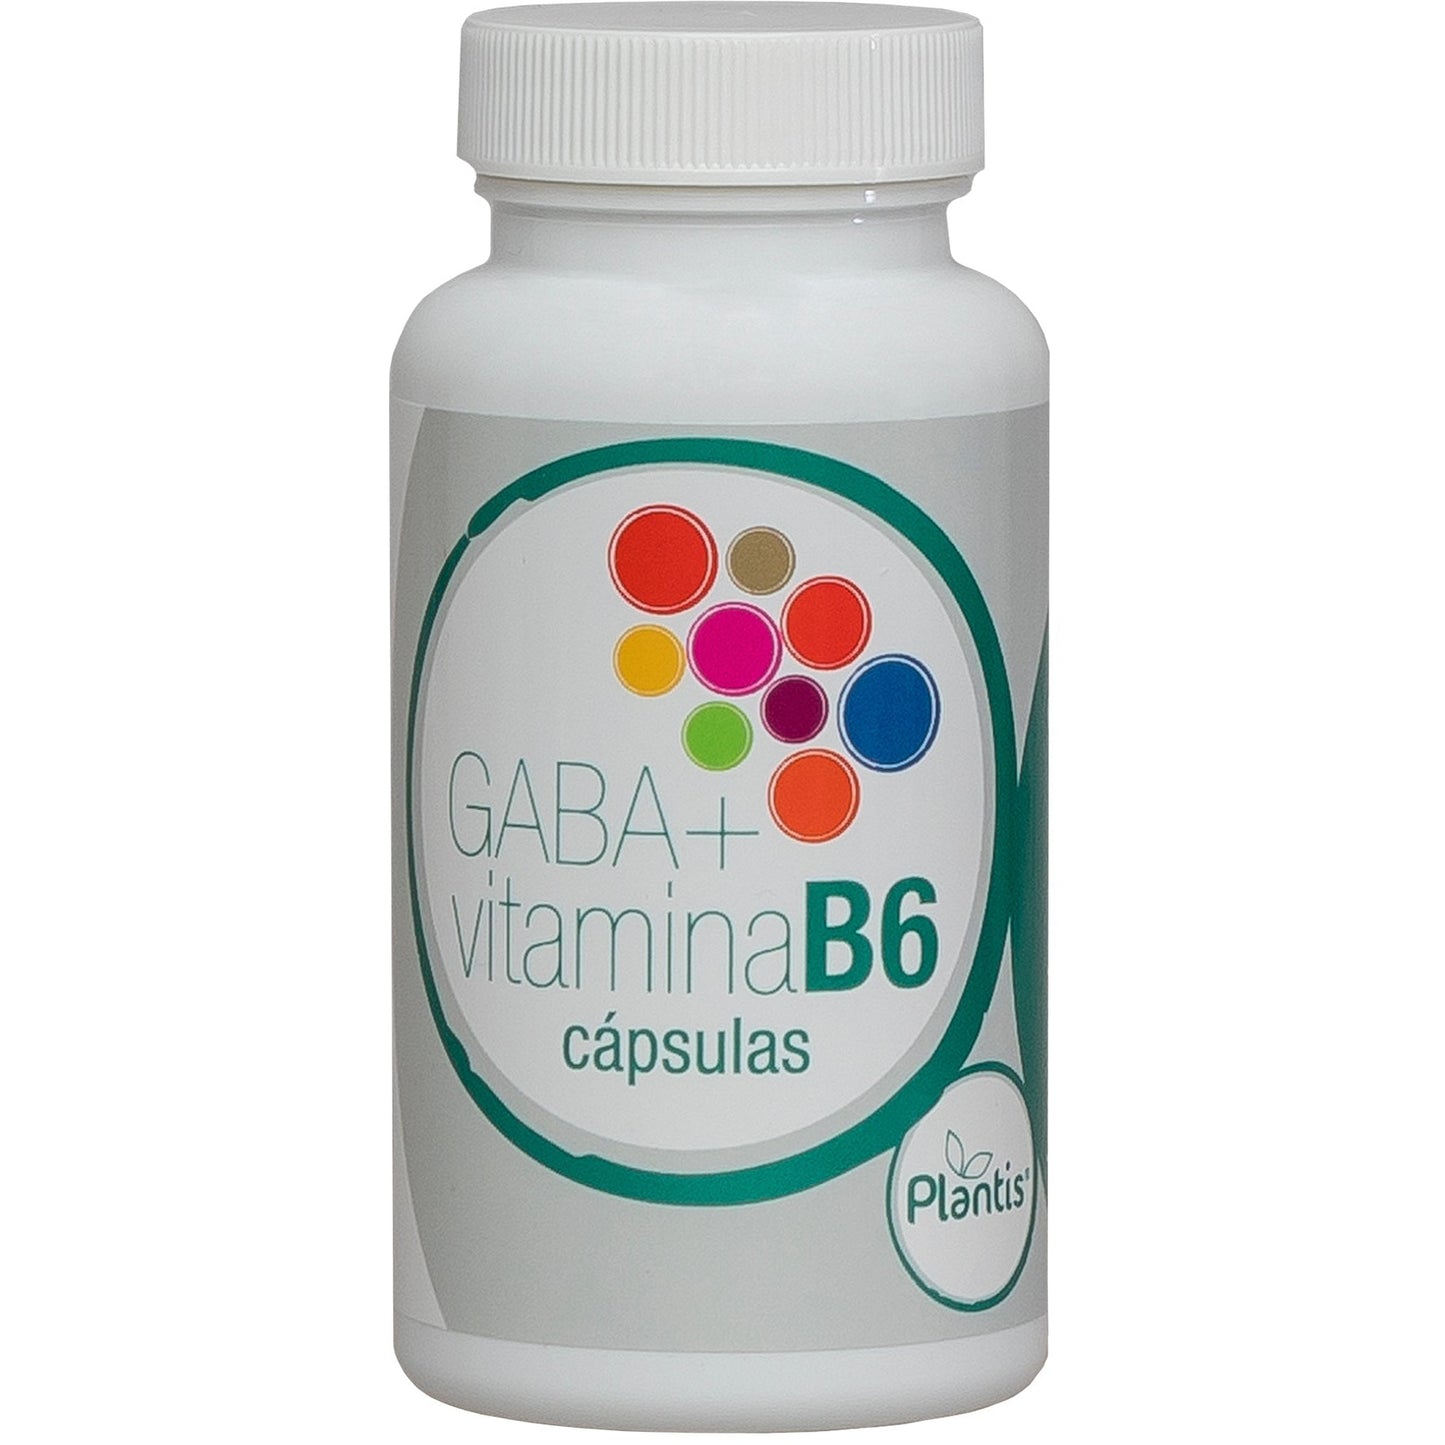 Gaba + Vitamina B6 60 Capsulas | Plantis - Dietetica Ferrer